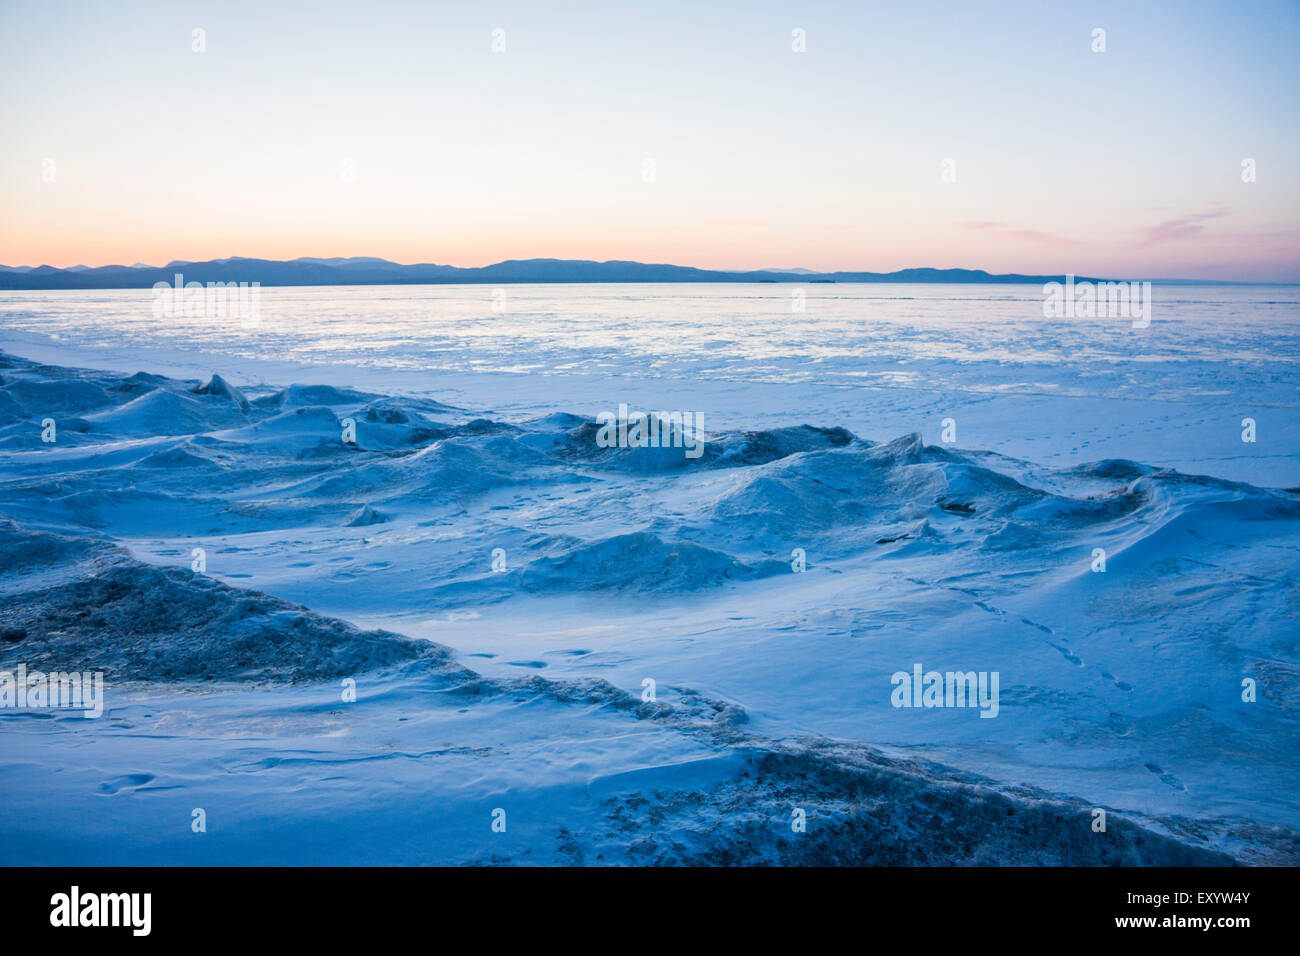 Lake Champlain mit Blick auf die Rocky Mountains.  Einfrieren hat kleine Eis Hügel am Ufer geführt. Stockfoto